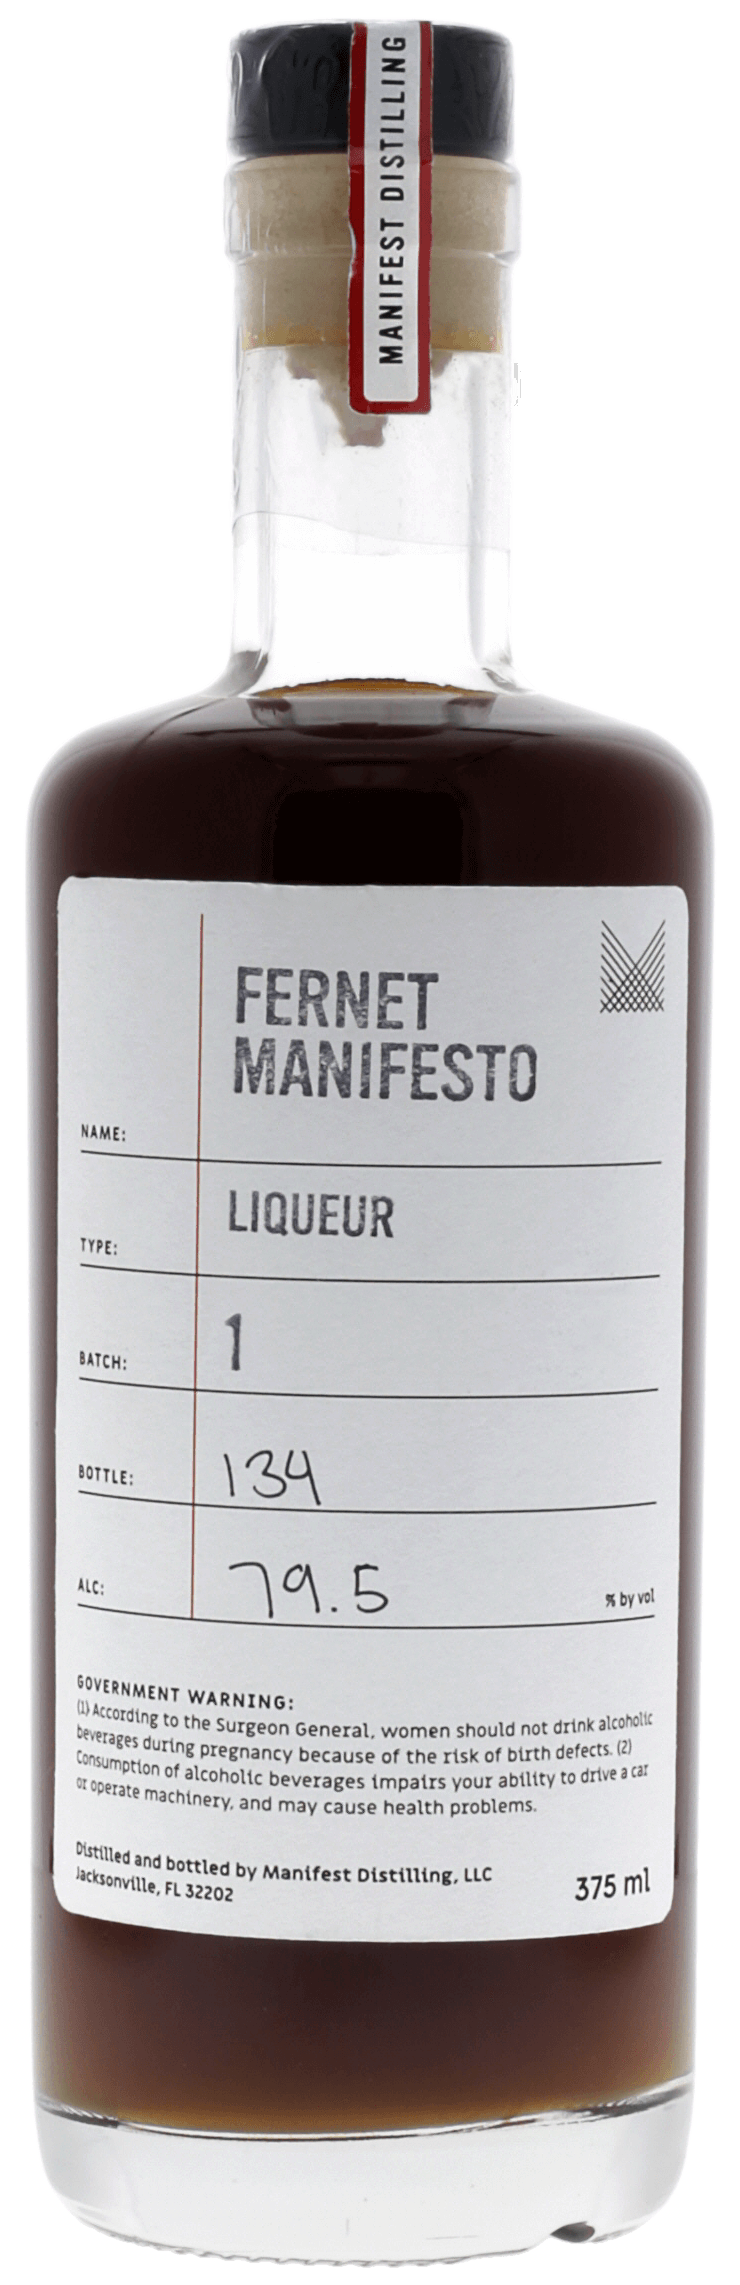 Fernet Manifesto